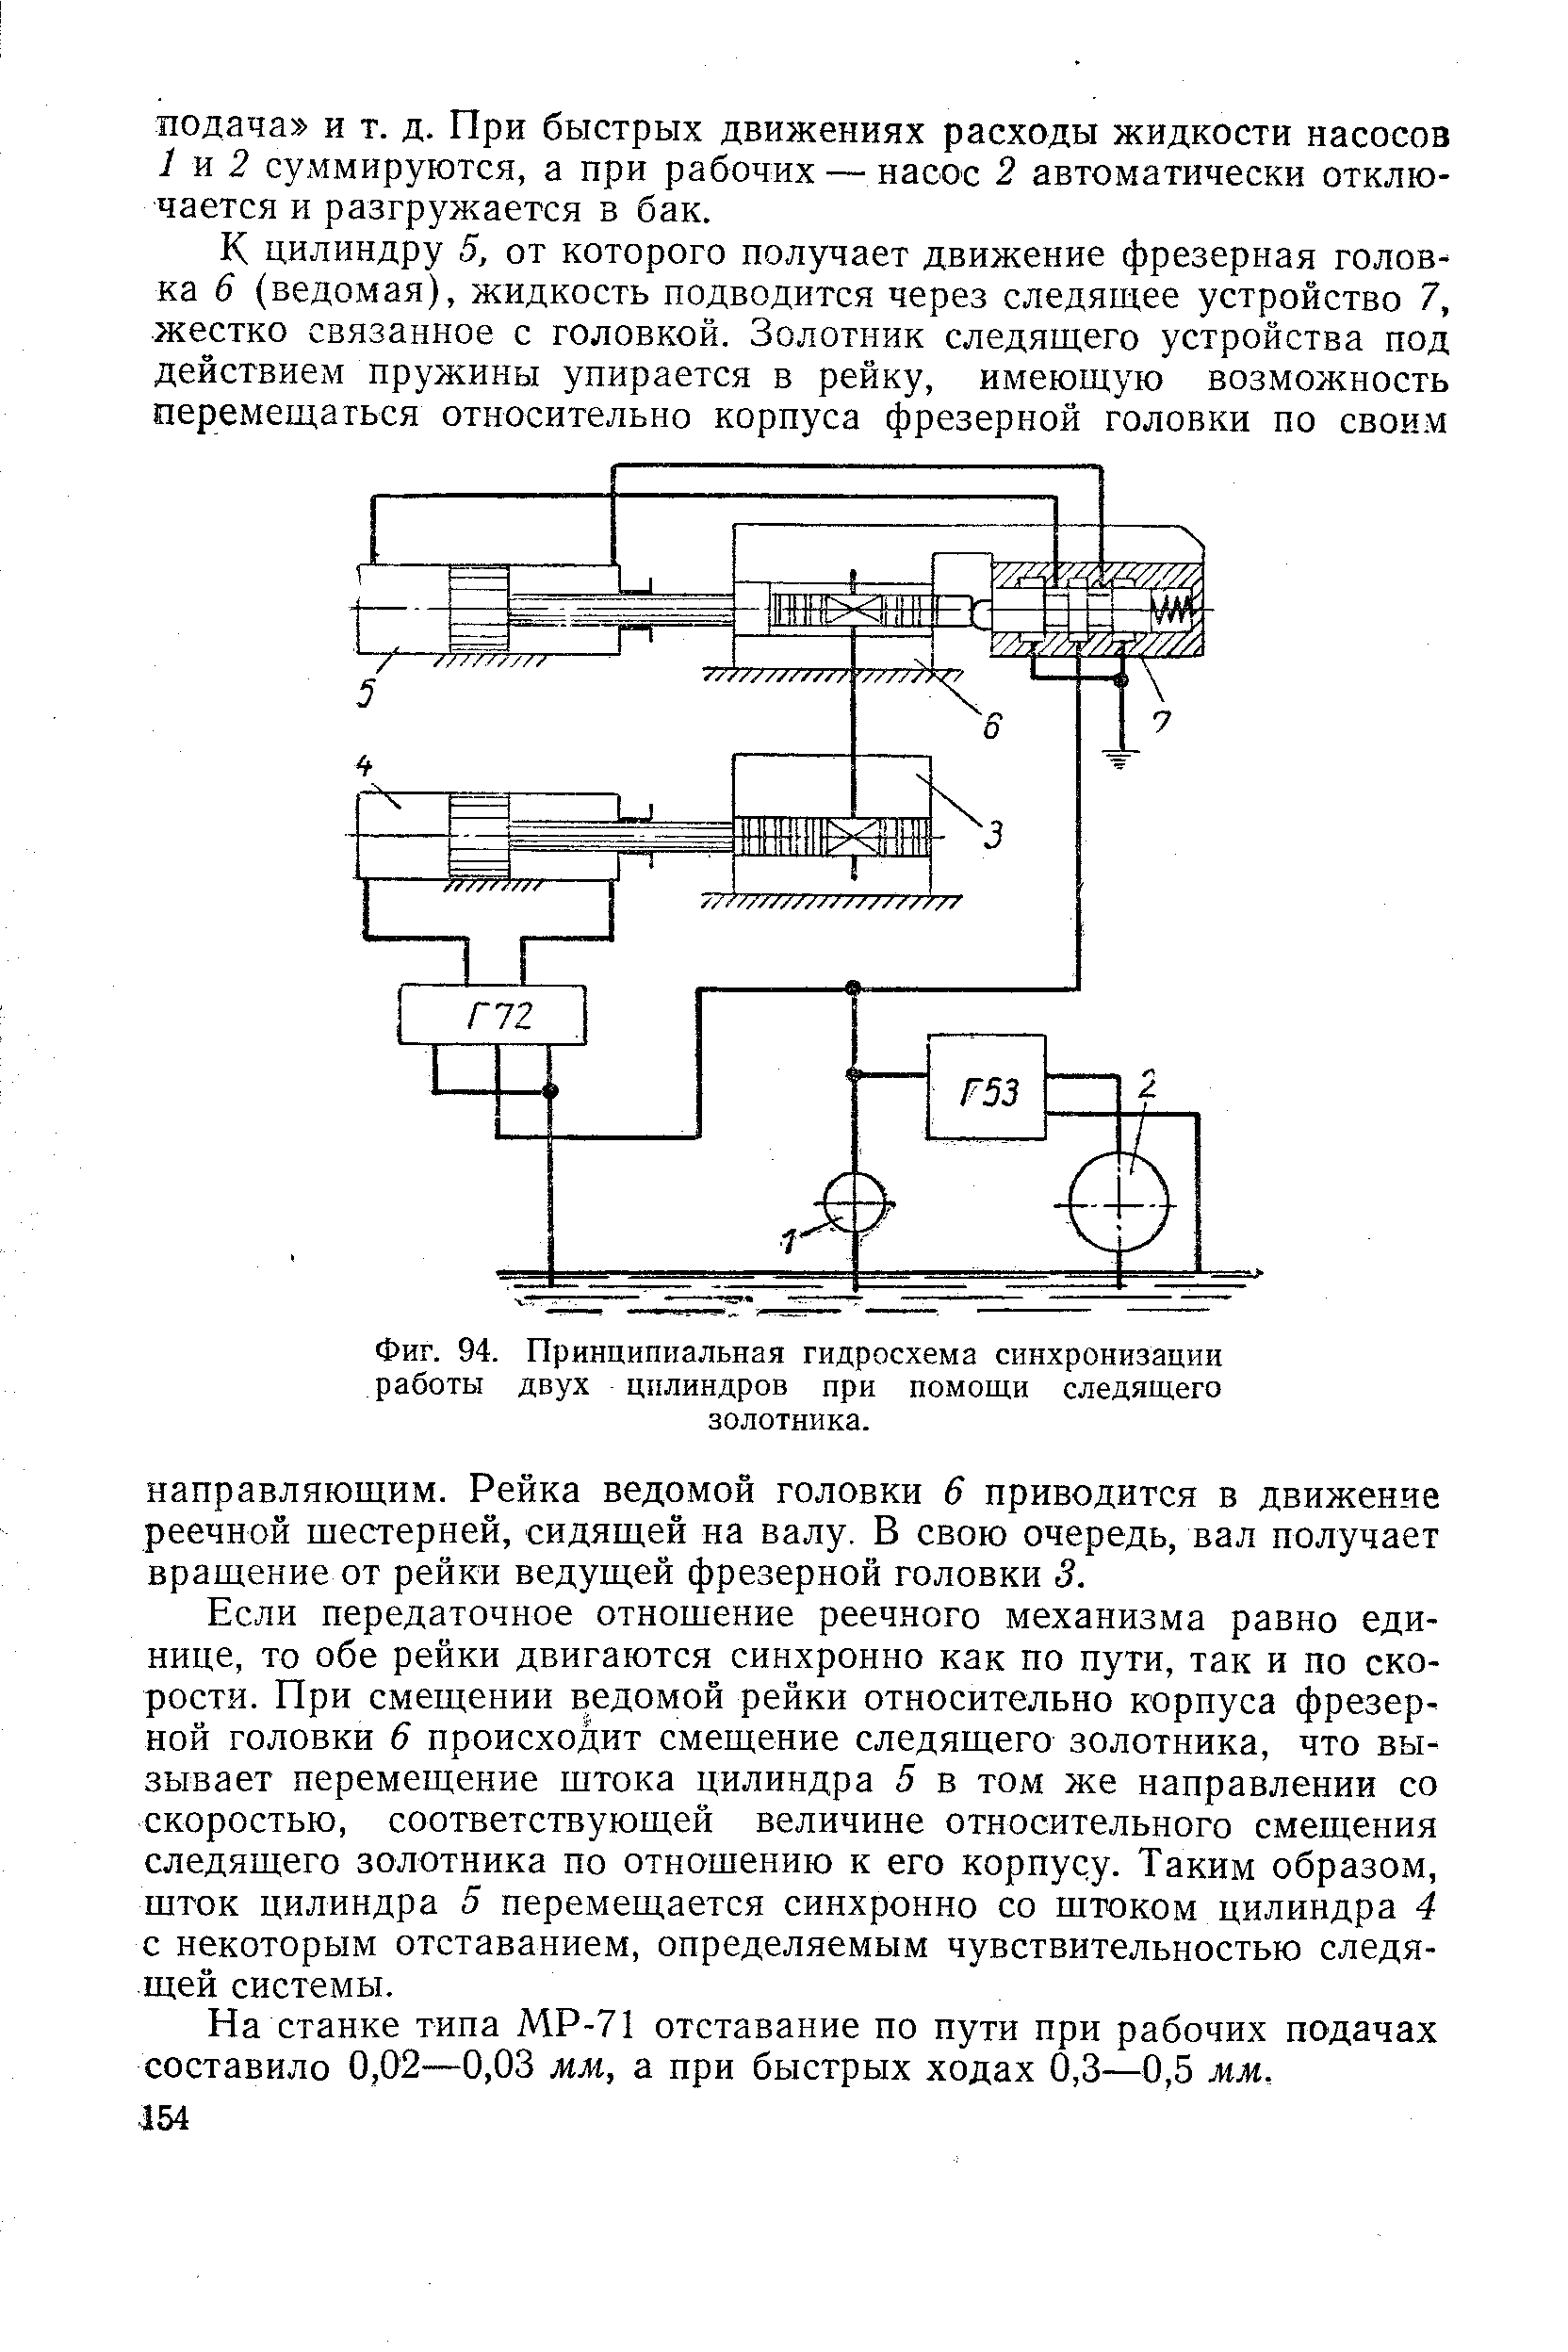 Фиг. 94. Принципиальная гидросхема синхронизации работы двух цилиндров при помощи следящего золотника.
